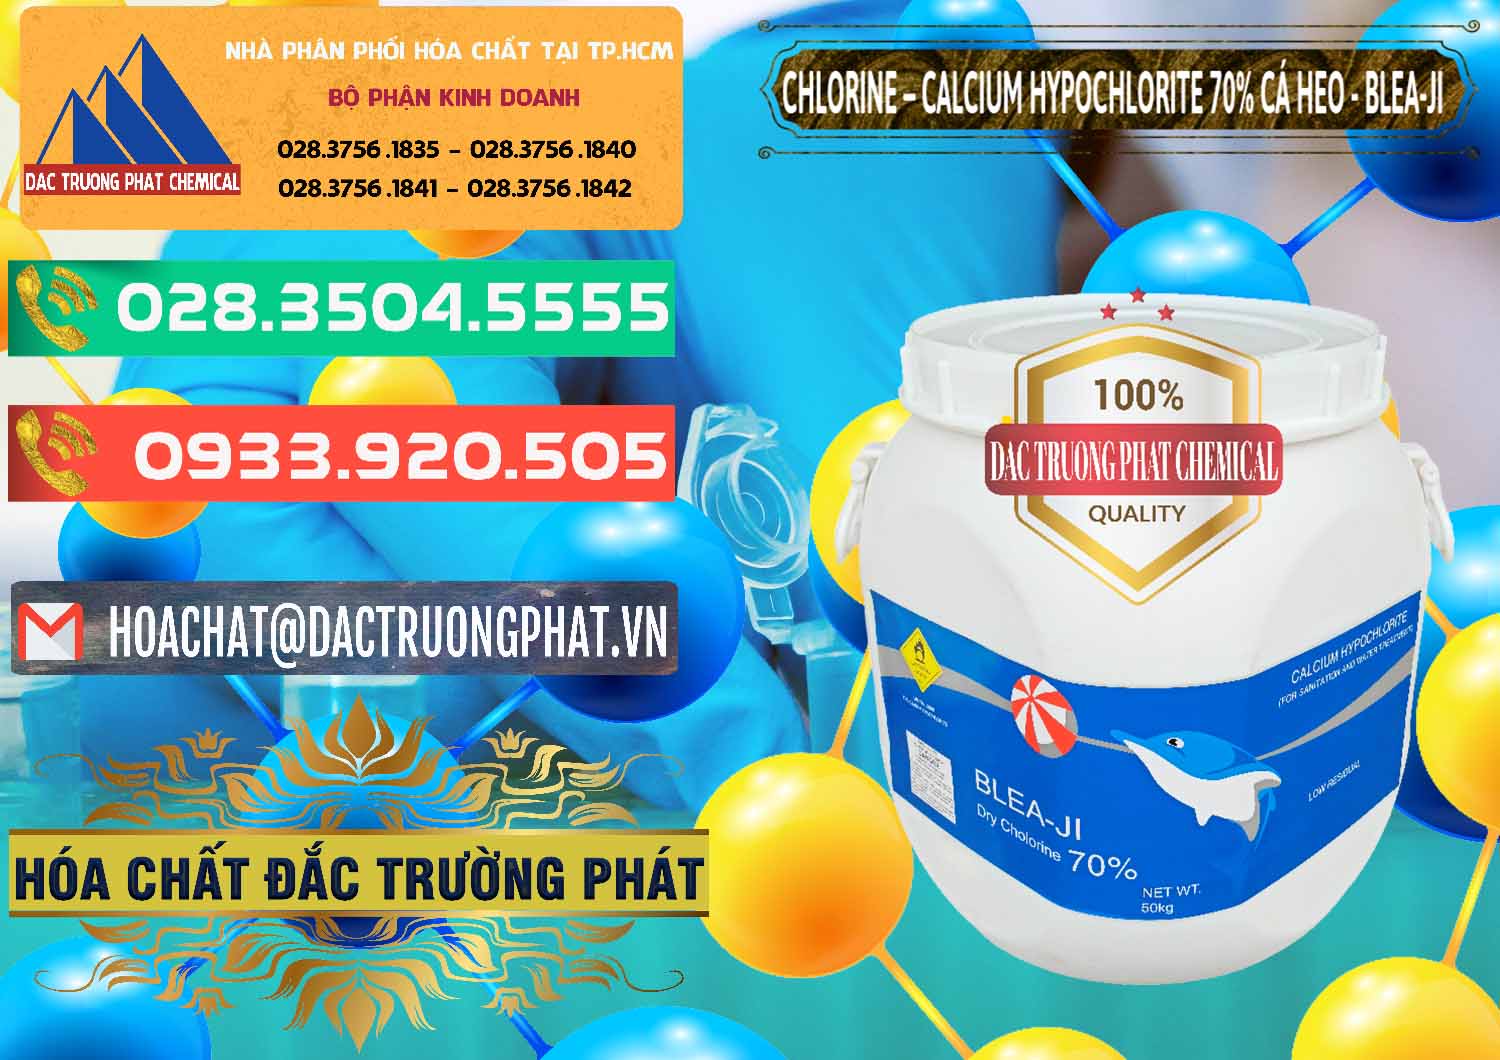 Cty chuyên bán & cung cấp Clorin - Chlorine Cá Heo 70% Blea-Ji Trung Quốc China - 0056 - Công ty phân phối và nhập khẩu hóa chất tại TP.HCM - congtyhoachat.com.vn